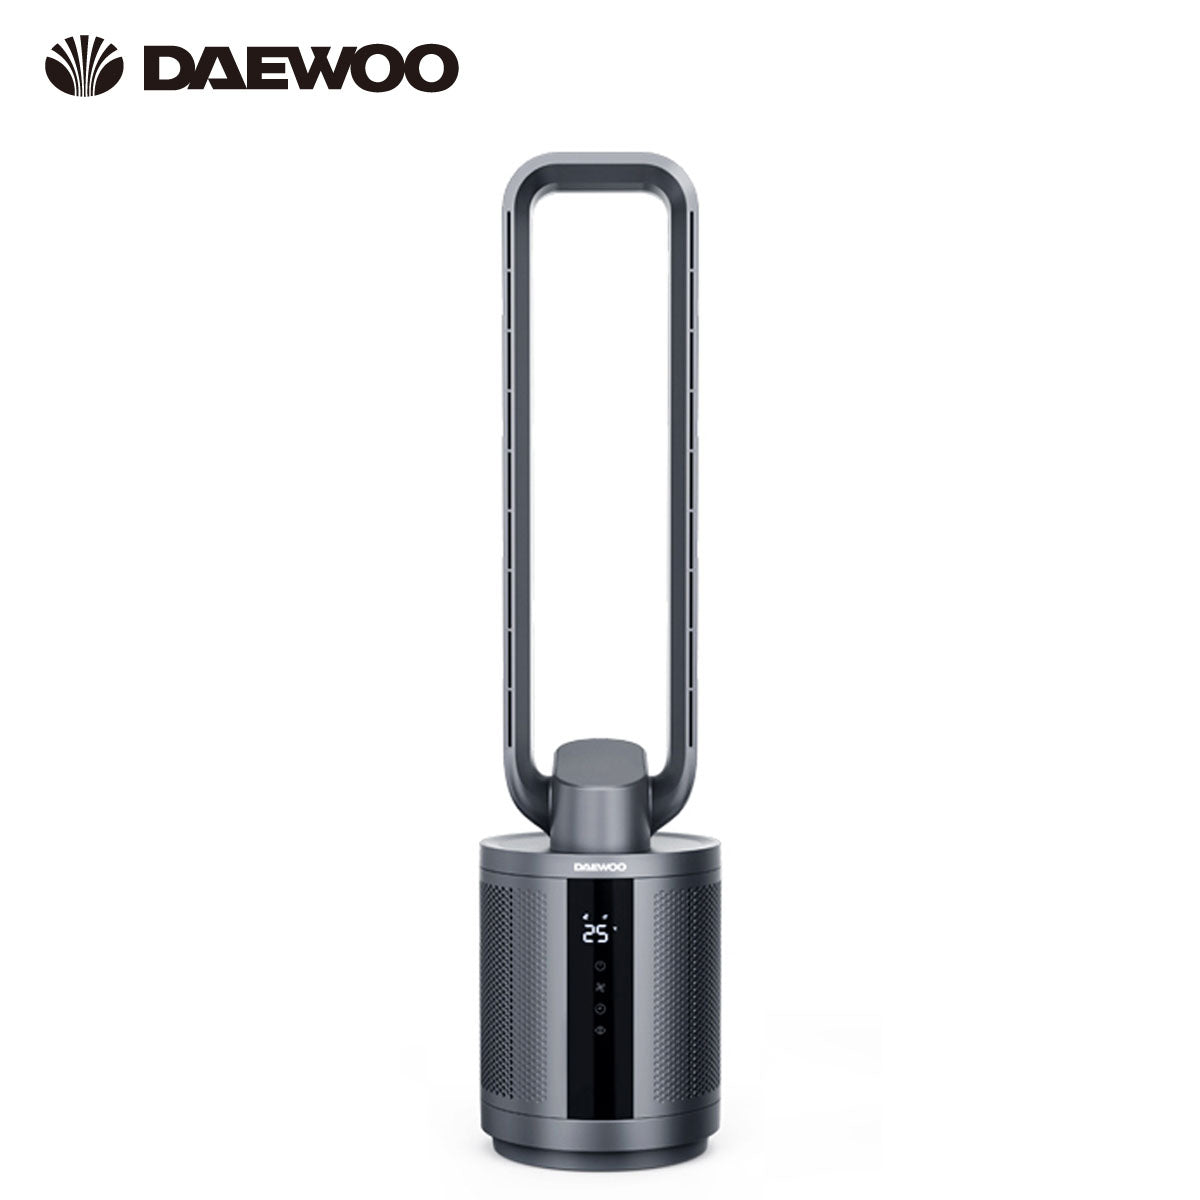 DAEWOO F9 MAX 負離子空氣淨化無葉風扇 - 灰色